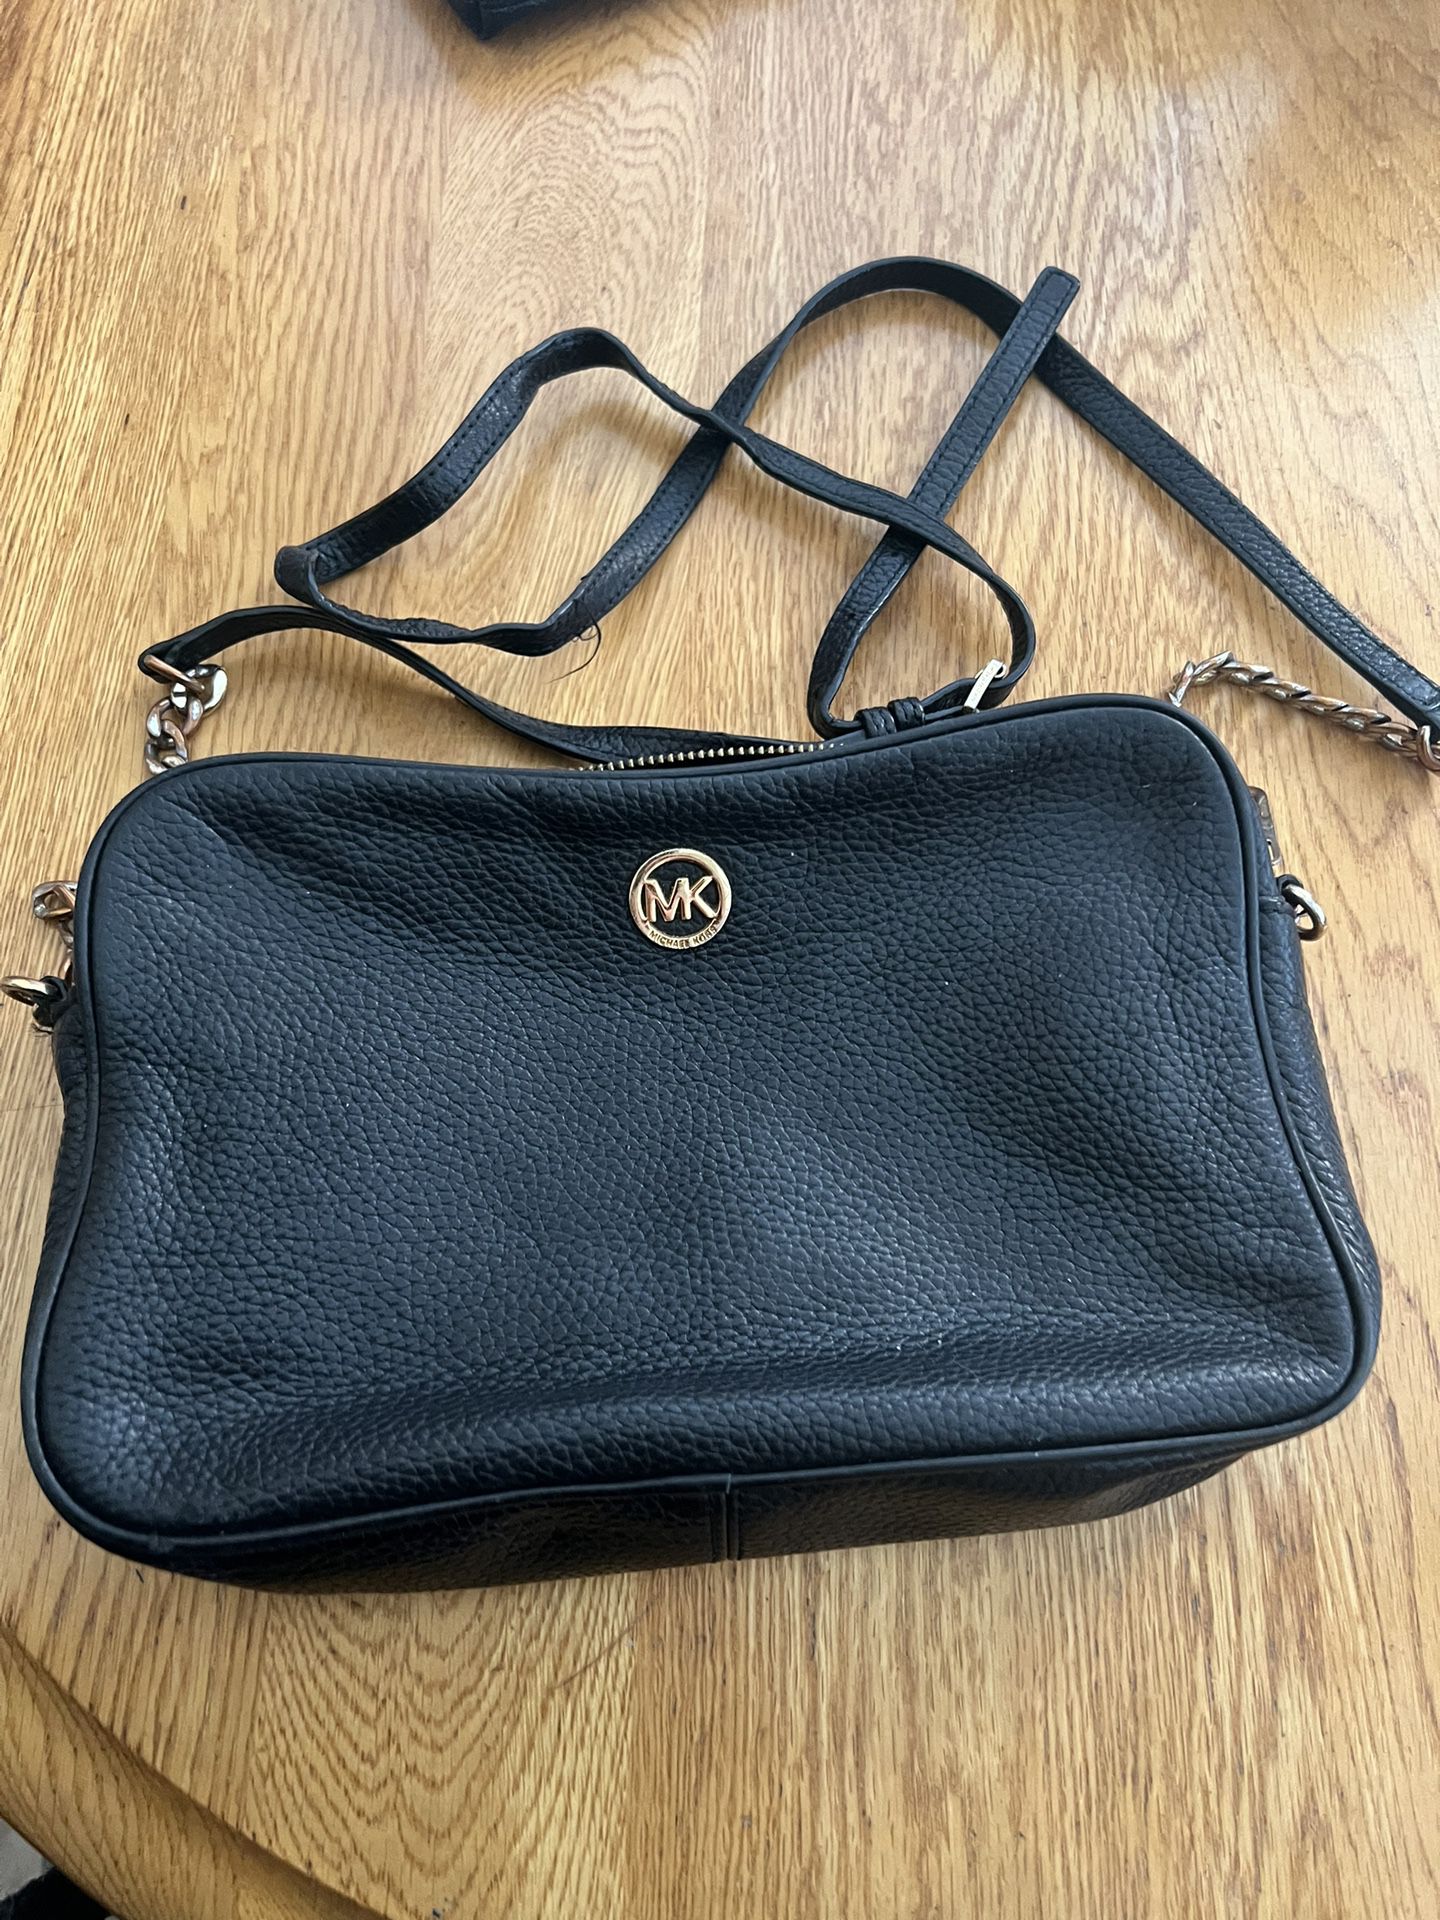 Michael Kors Leather Hand Bag